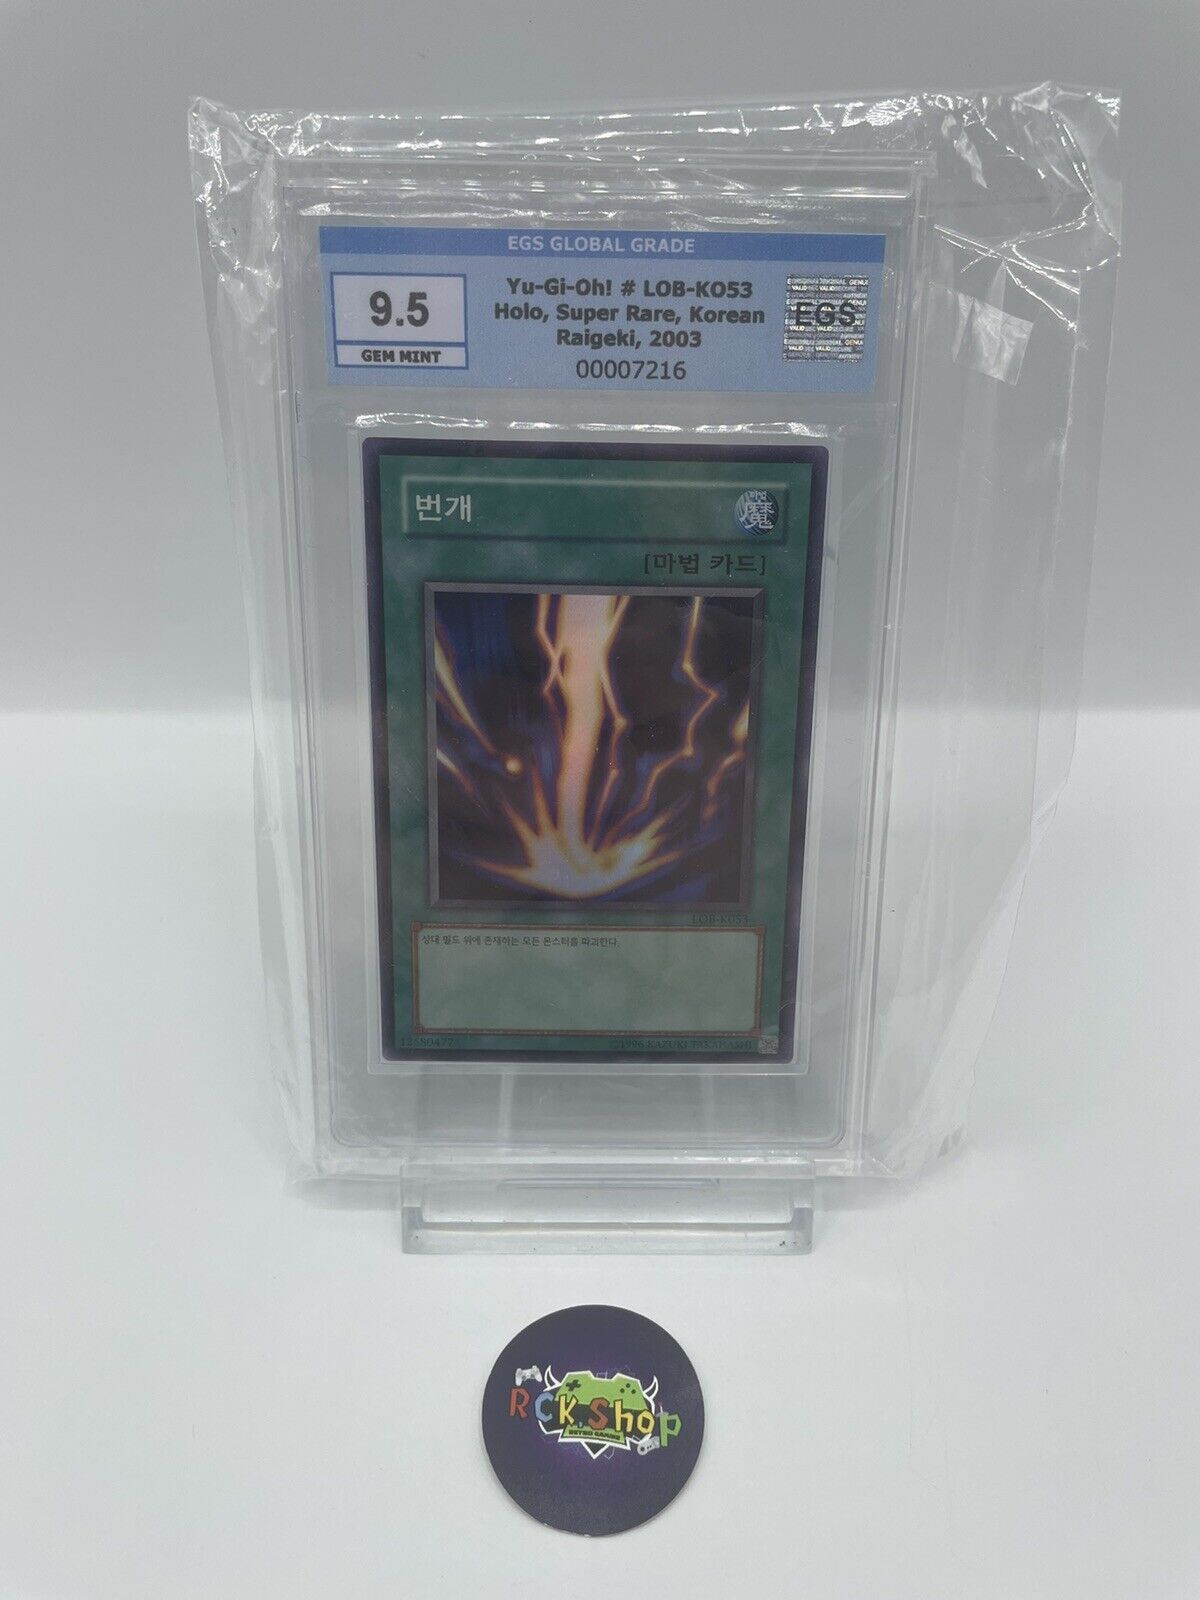 Yu-Gi-Oh Card - Raigeki - Holo - Super Rare - Korean - EGS 9.5 GEM MINT